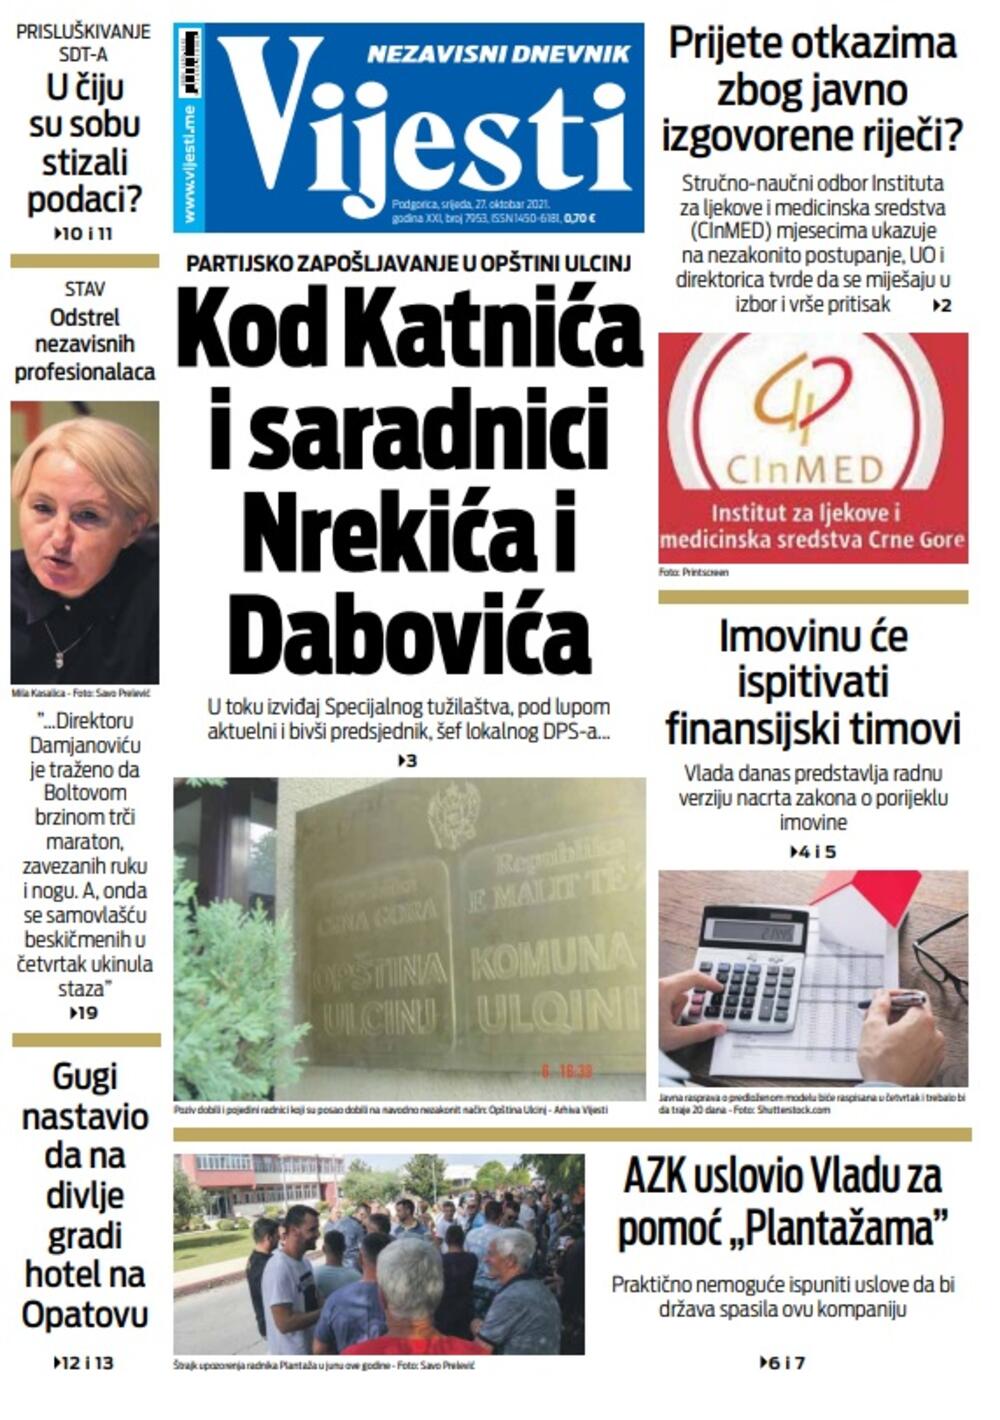 Naslovna strana "Vijesti" za srijedu 27. oktobar 2021. godine, Foto: Vijesti